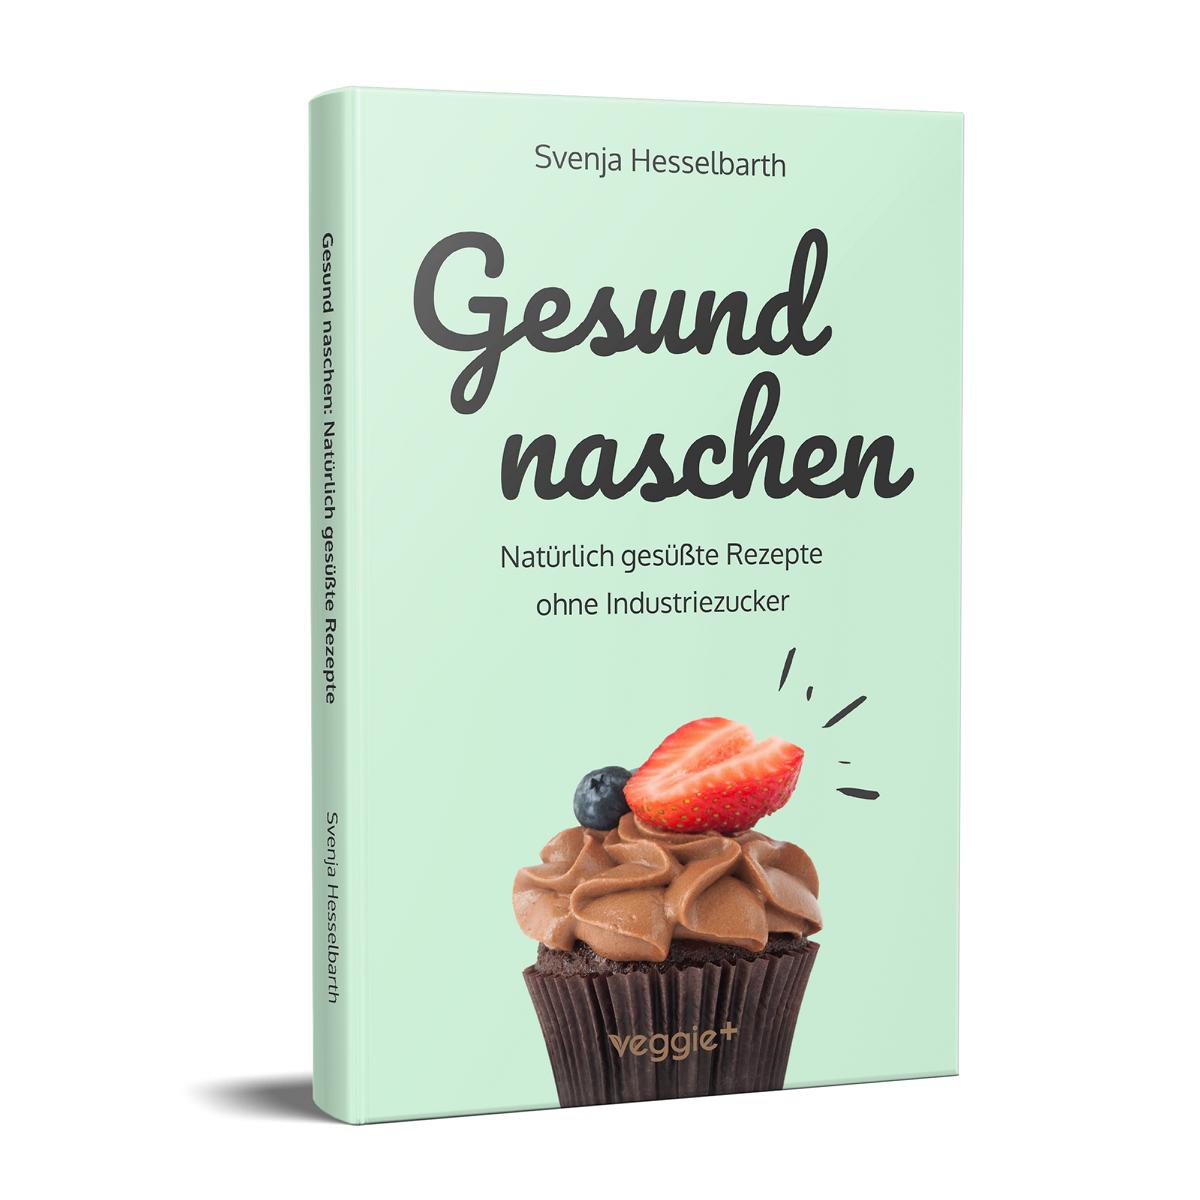 Gesund naschen: Natürliche Rezepte ohne Industriezucker von Svenja Hesselbarth im veggie + Verlag